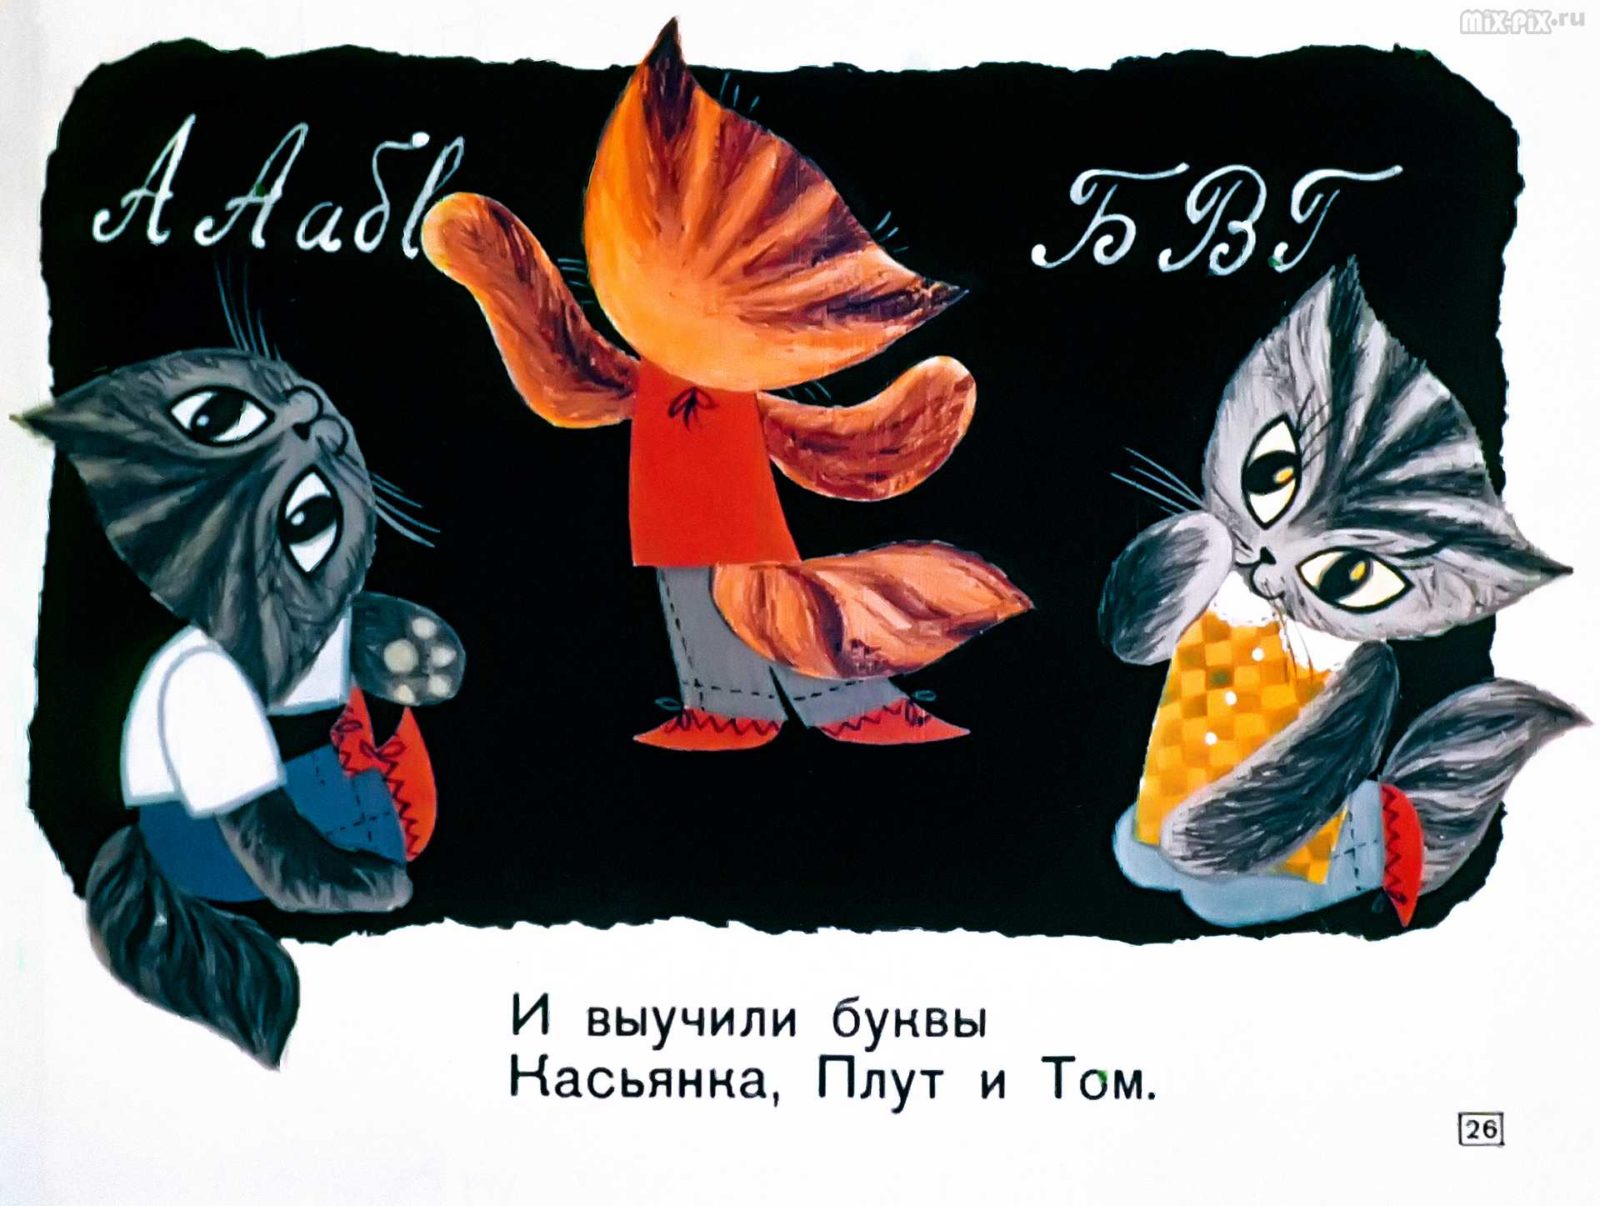 Касьянка, Том и Плут (1968) 35